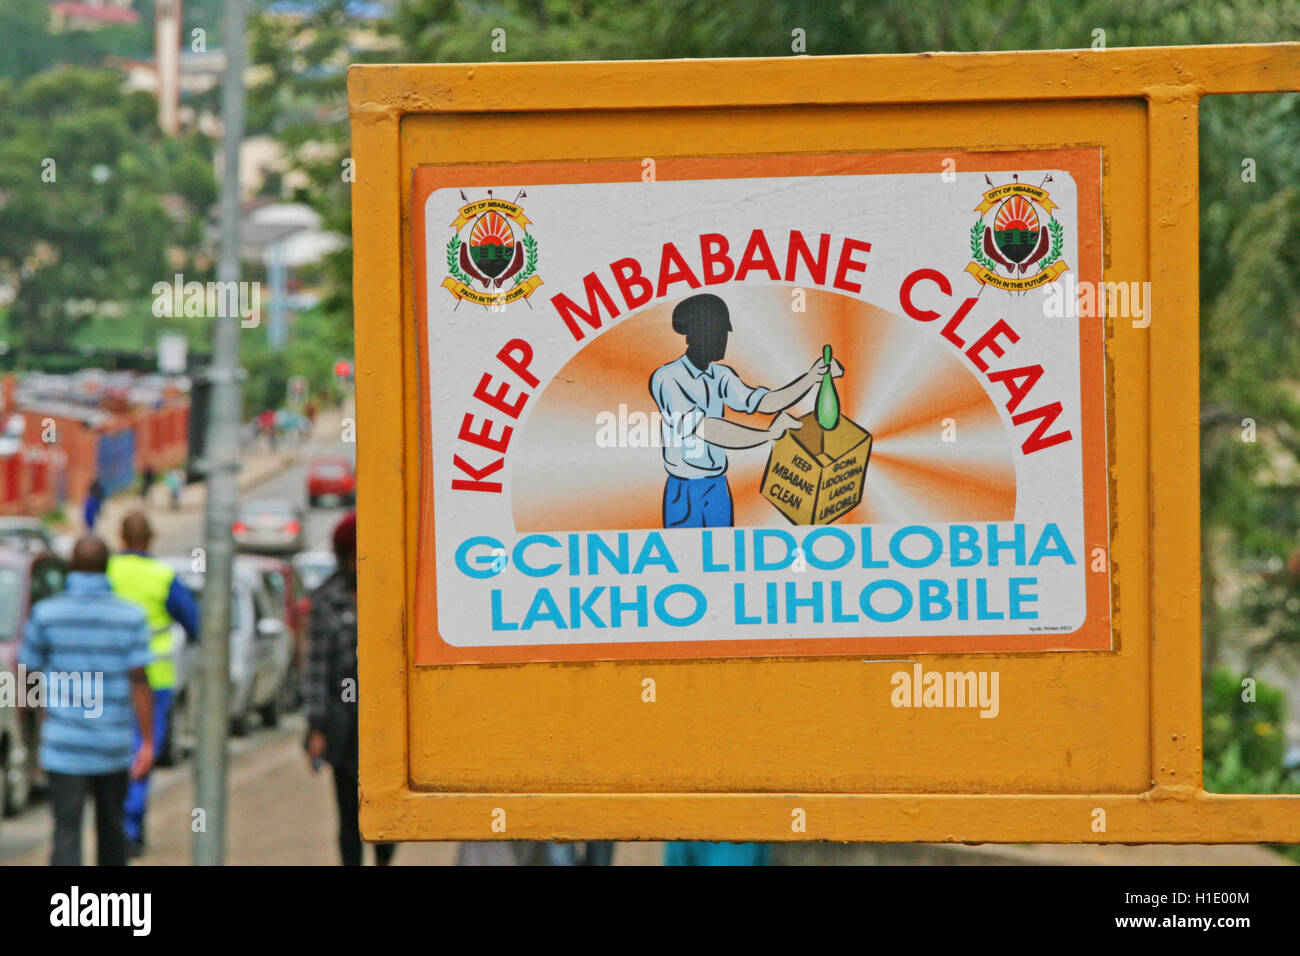 Street sign, Mbabane, Kingdom of Swaziland Stock Photo